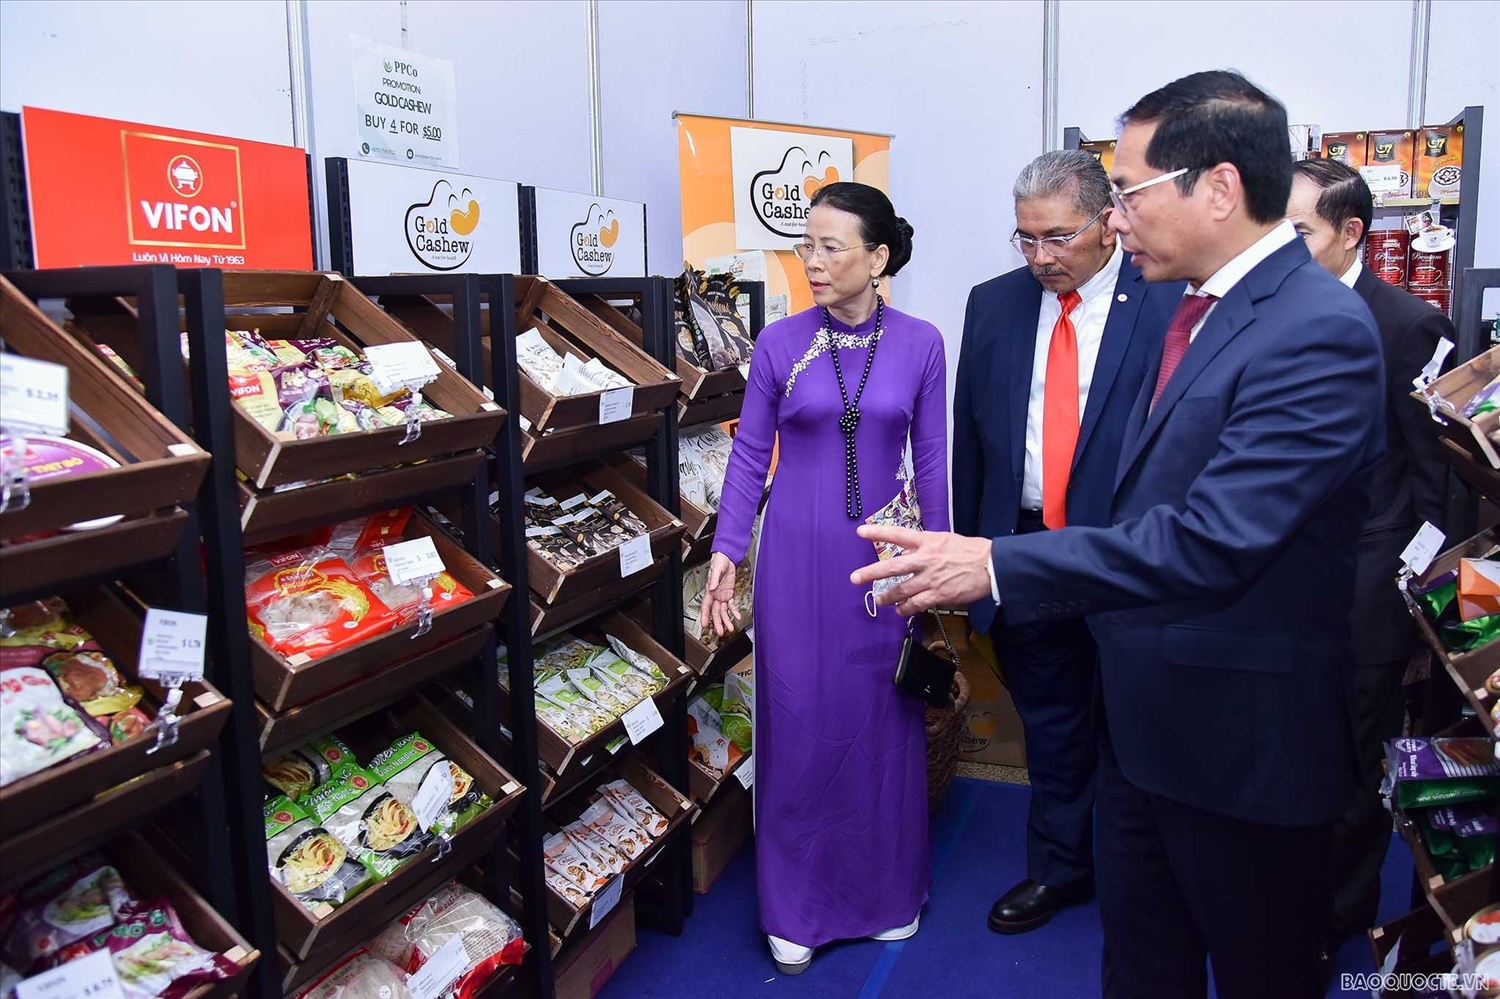 Bộ trưởng Ngoại giao Bùi Thanh Sơn giới thiệu các sản phẩm của Việt Nam với Bộ trưởng Dato Erywan.